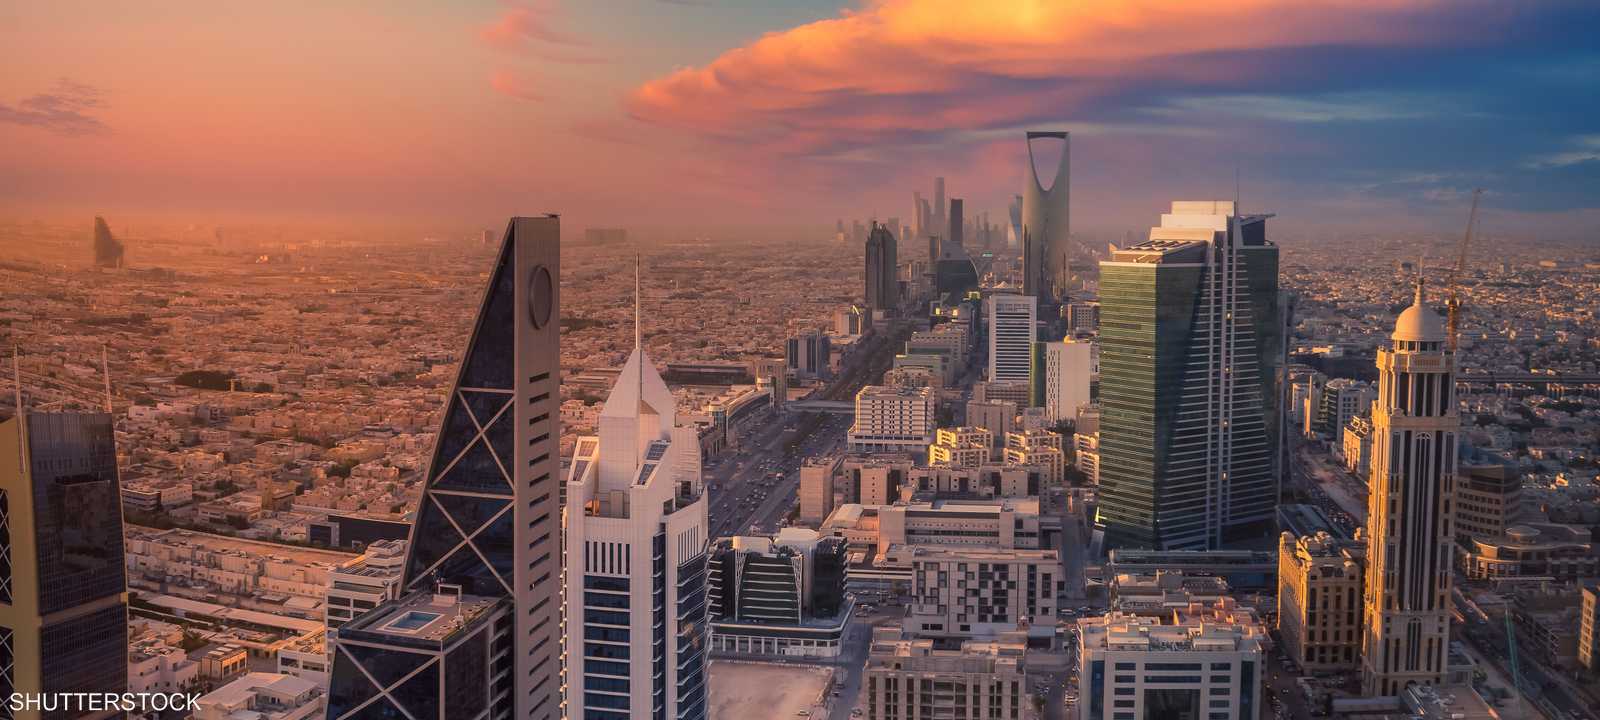 العاصمة السعودية الرياض - اقتصاد السعودية